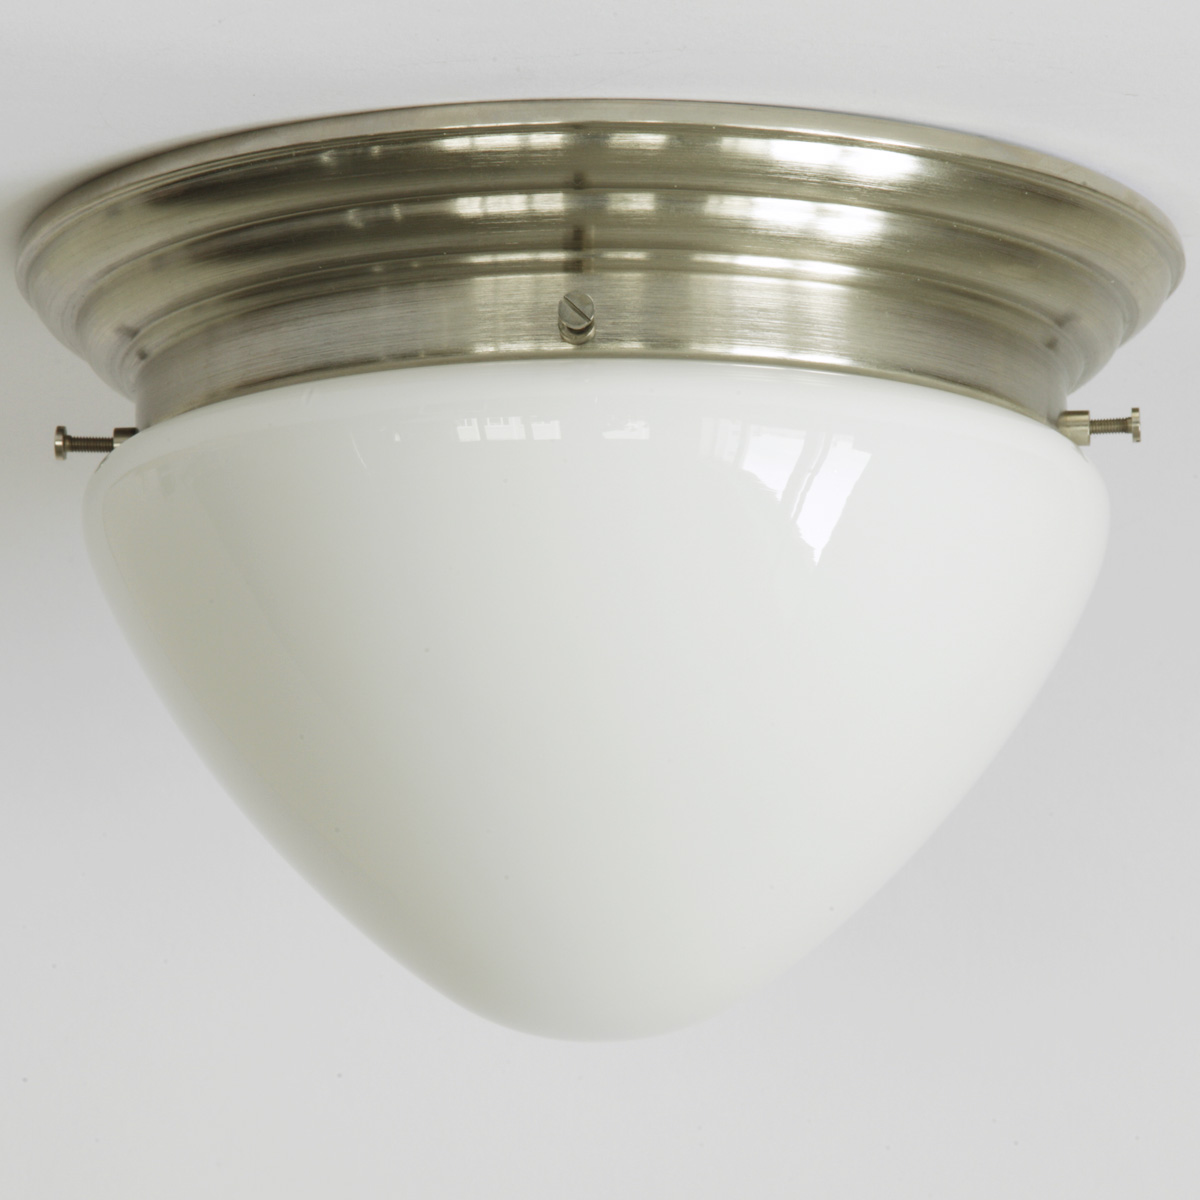 Messing-Plafoniere mit abgerundetem Opalglas Ø 26 cm: Gewölbte Deckenleuchte, hier abgebildet mit Deckenteil in matt vernickelt